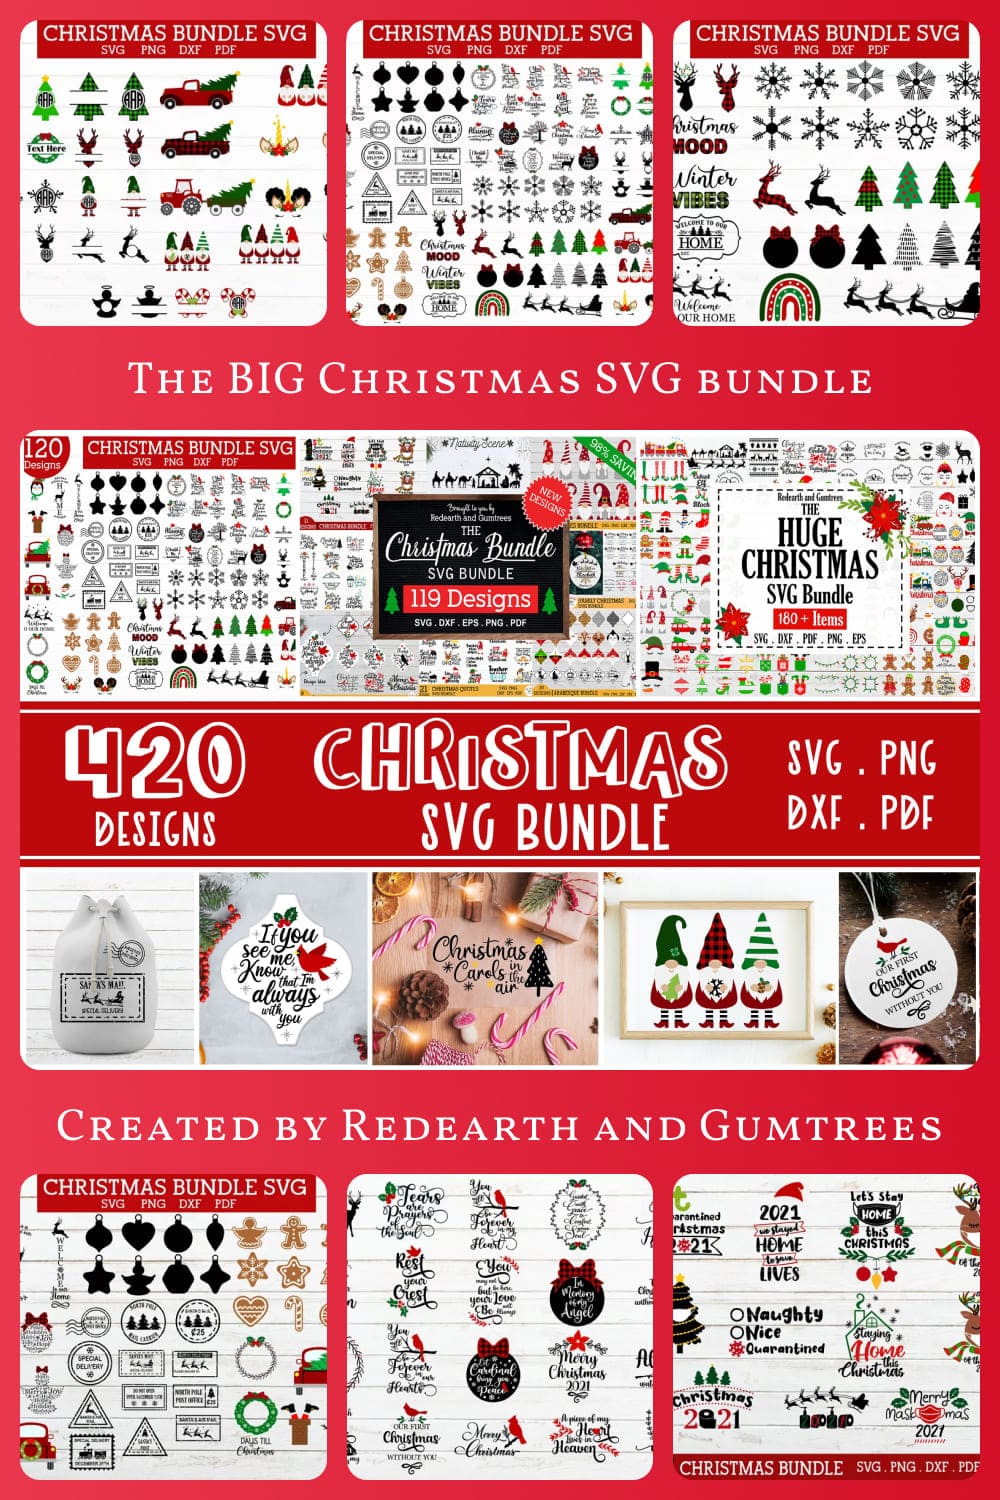 The Big Christmas SVG Bundle 420 Designs, Arabesque, Gnome SVG.